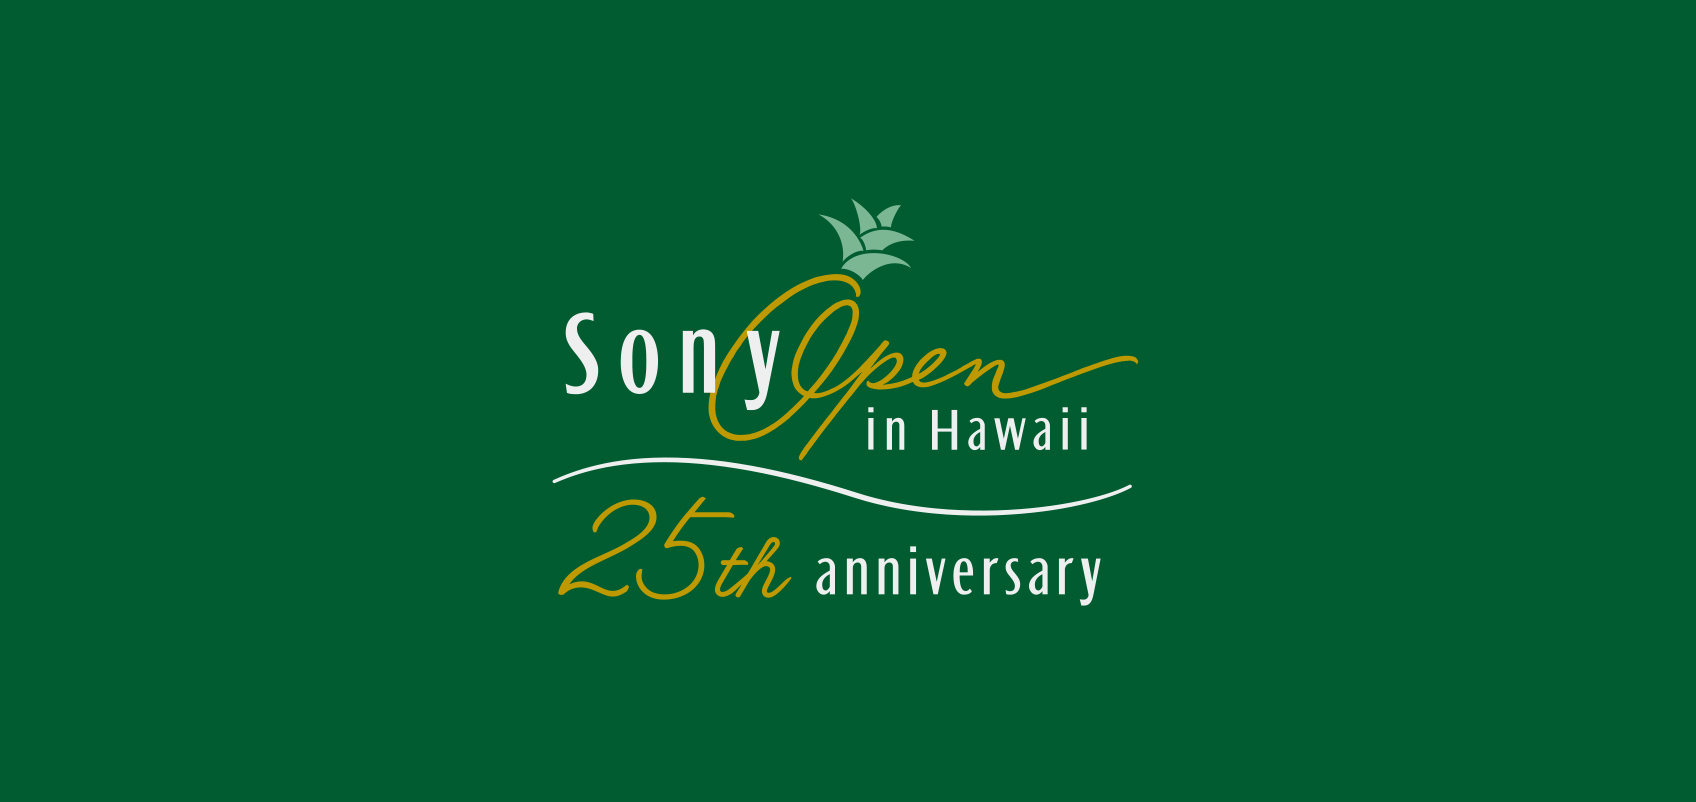 ソニーオープンインハワイ、25周年のロゴ